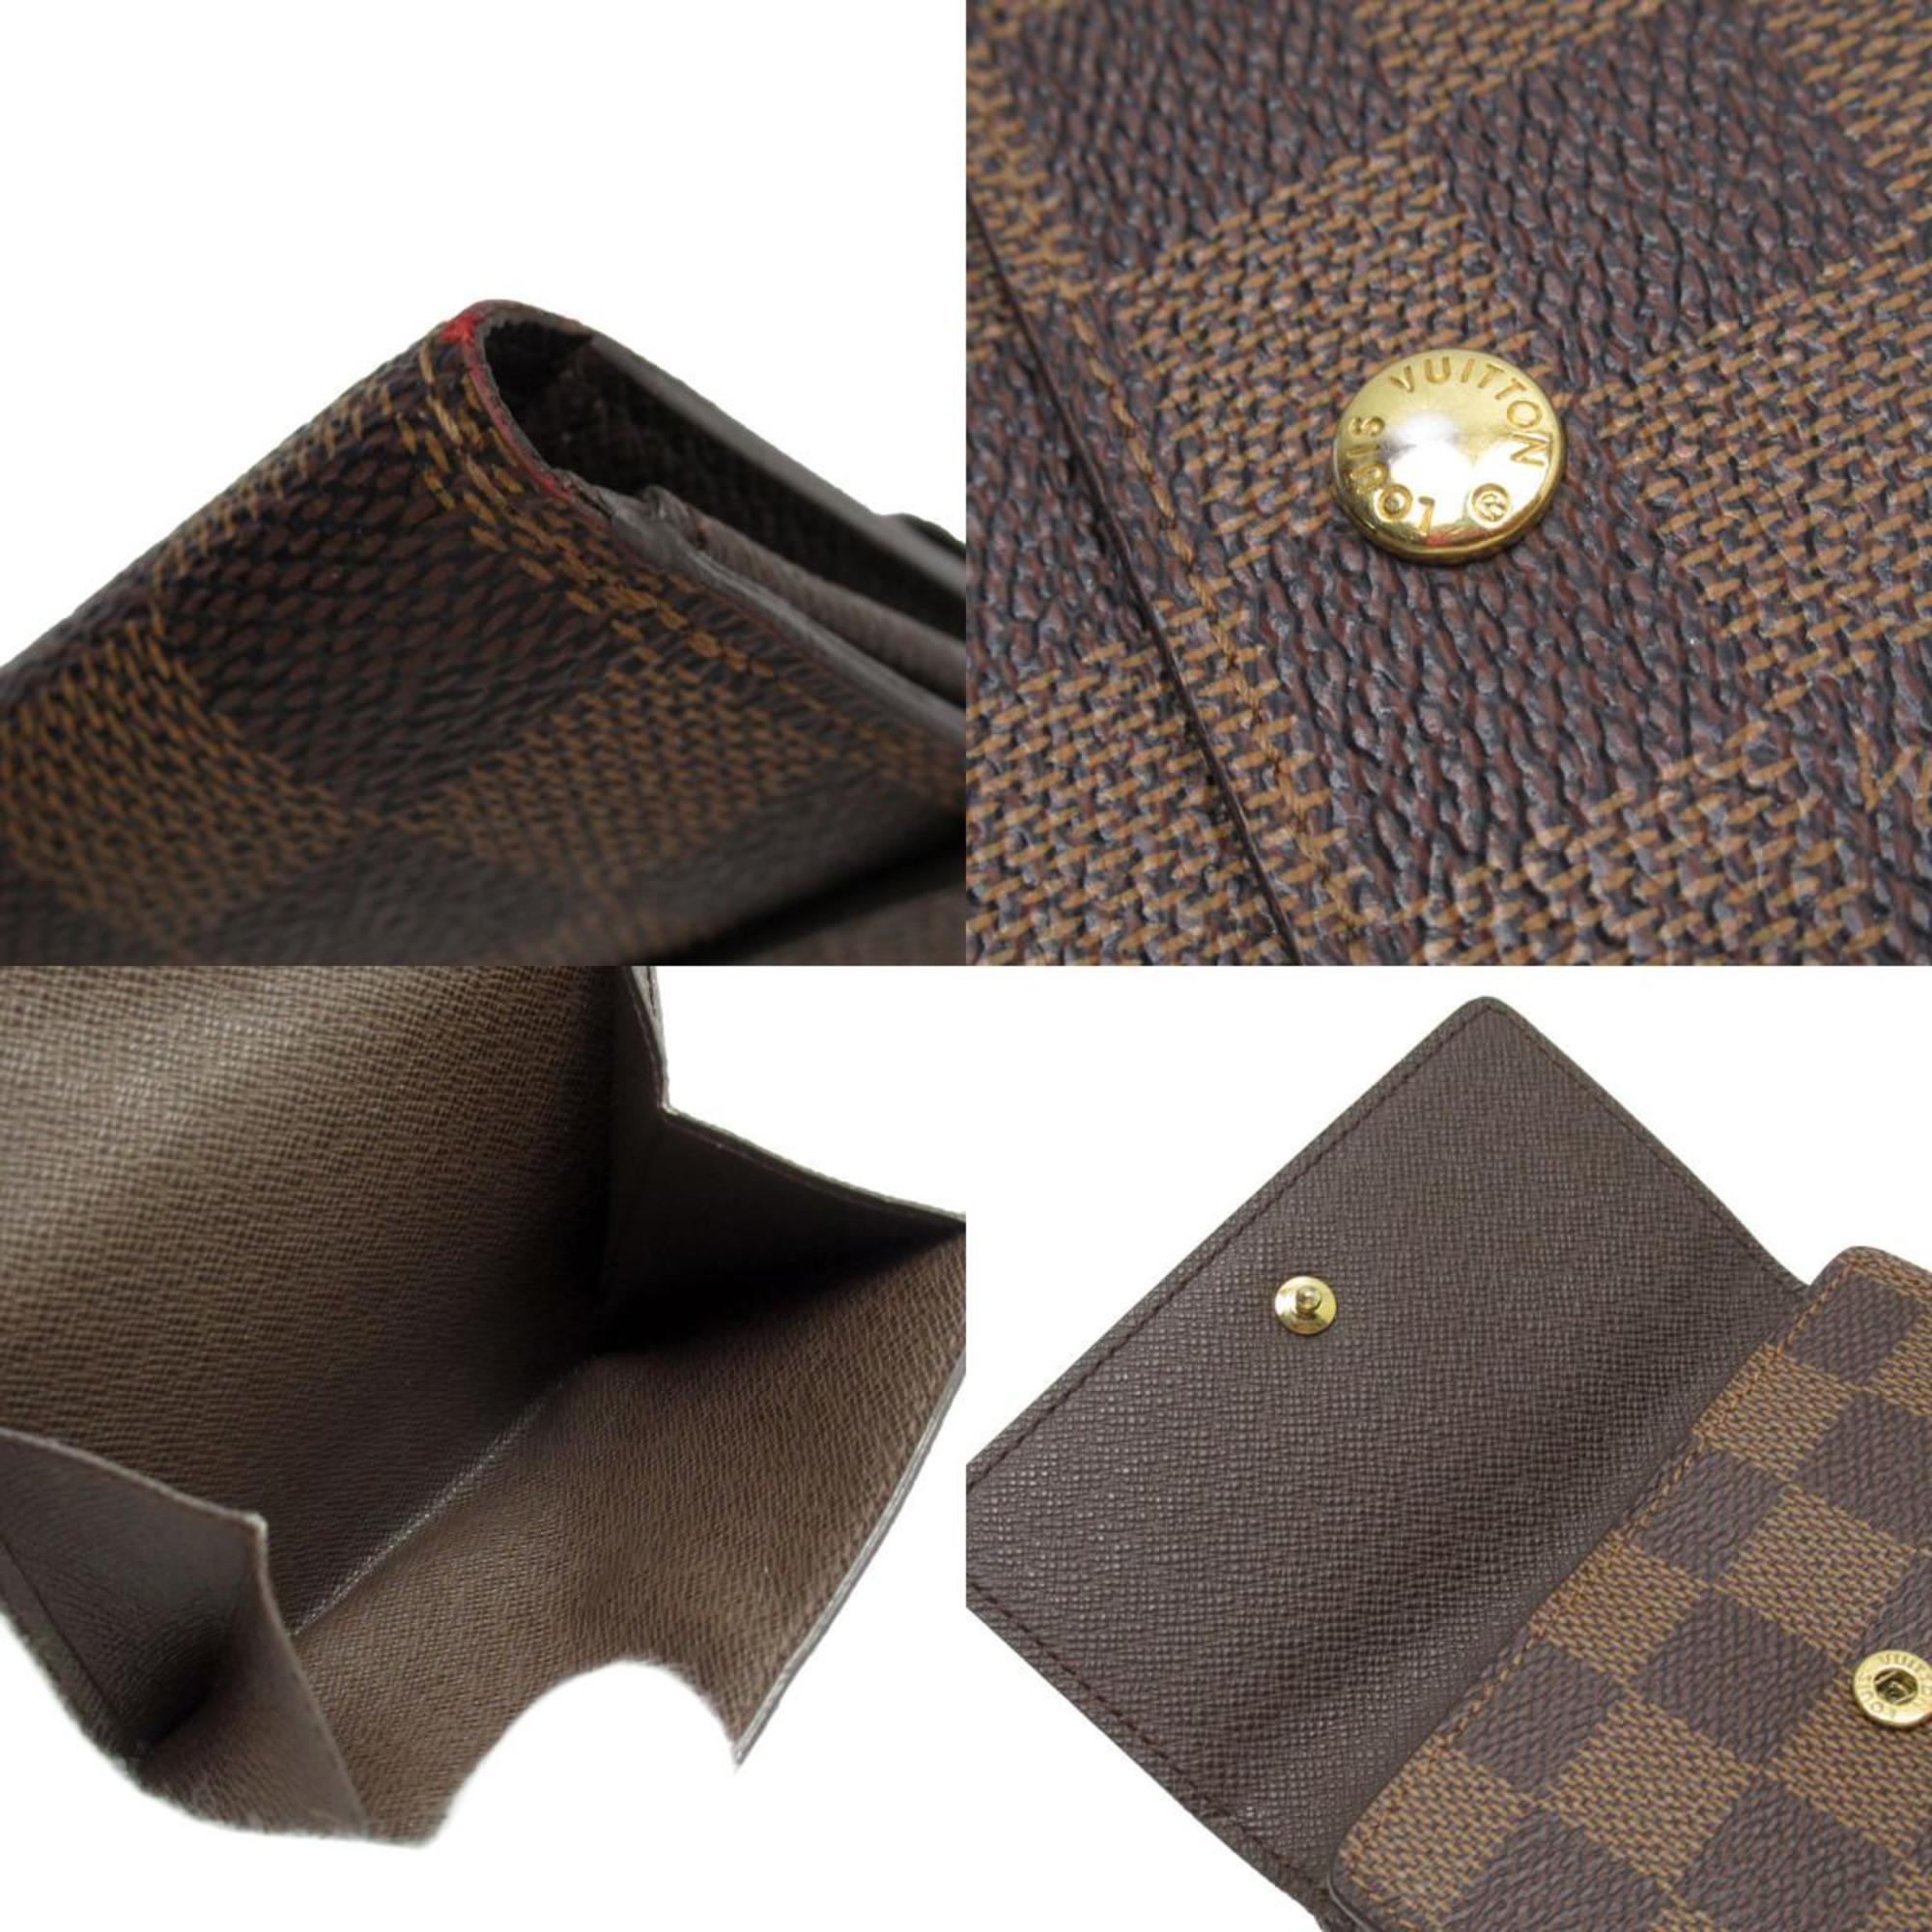 Louis Vuitton LOUIS VUITTON Tri-fold Wallet Damier Portefeuille Elise Canvas Brown Gold Unisex w0179a